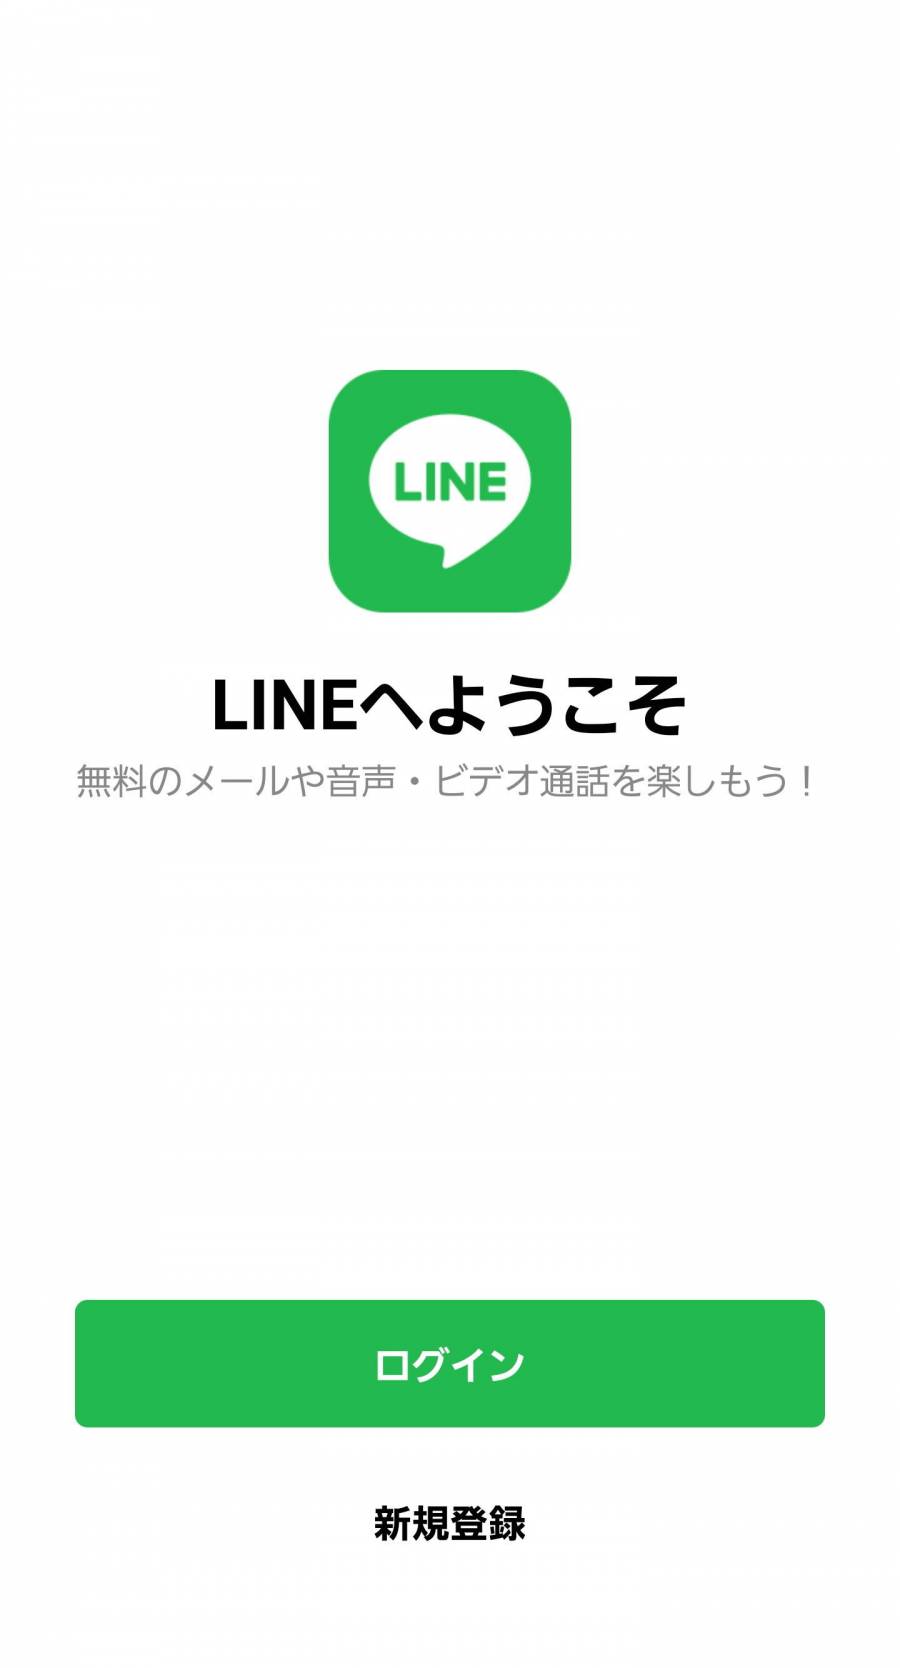 「LINEへようこそ」の画面